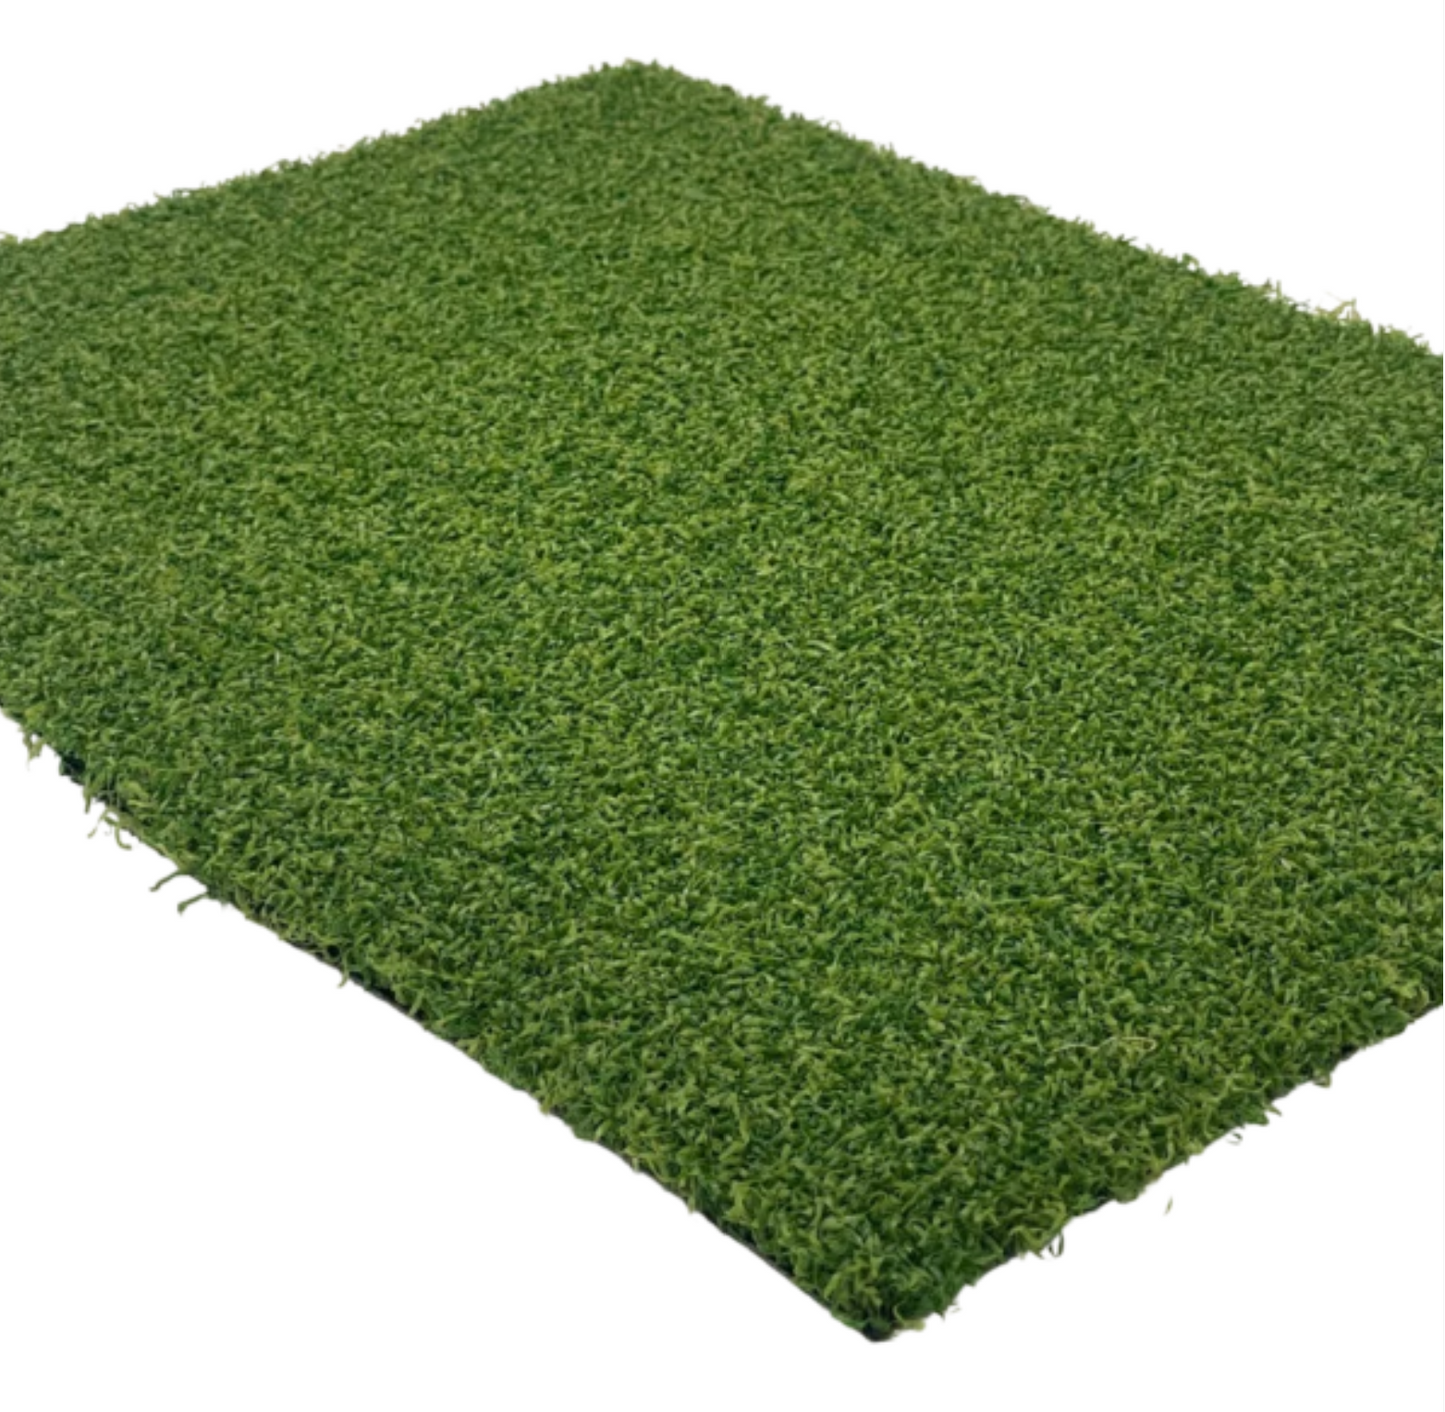 Luxury Pro Putt 15mm Artificial Grass